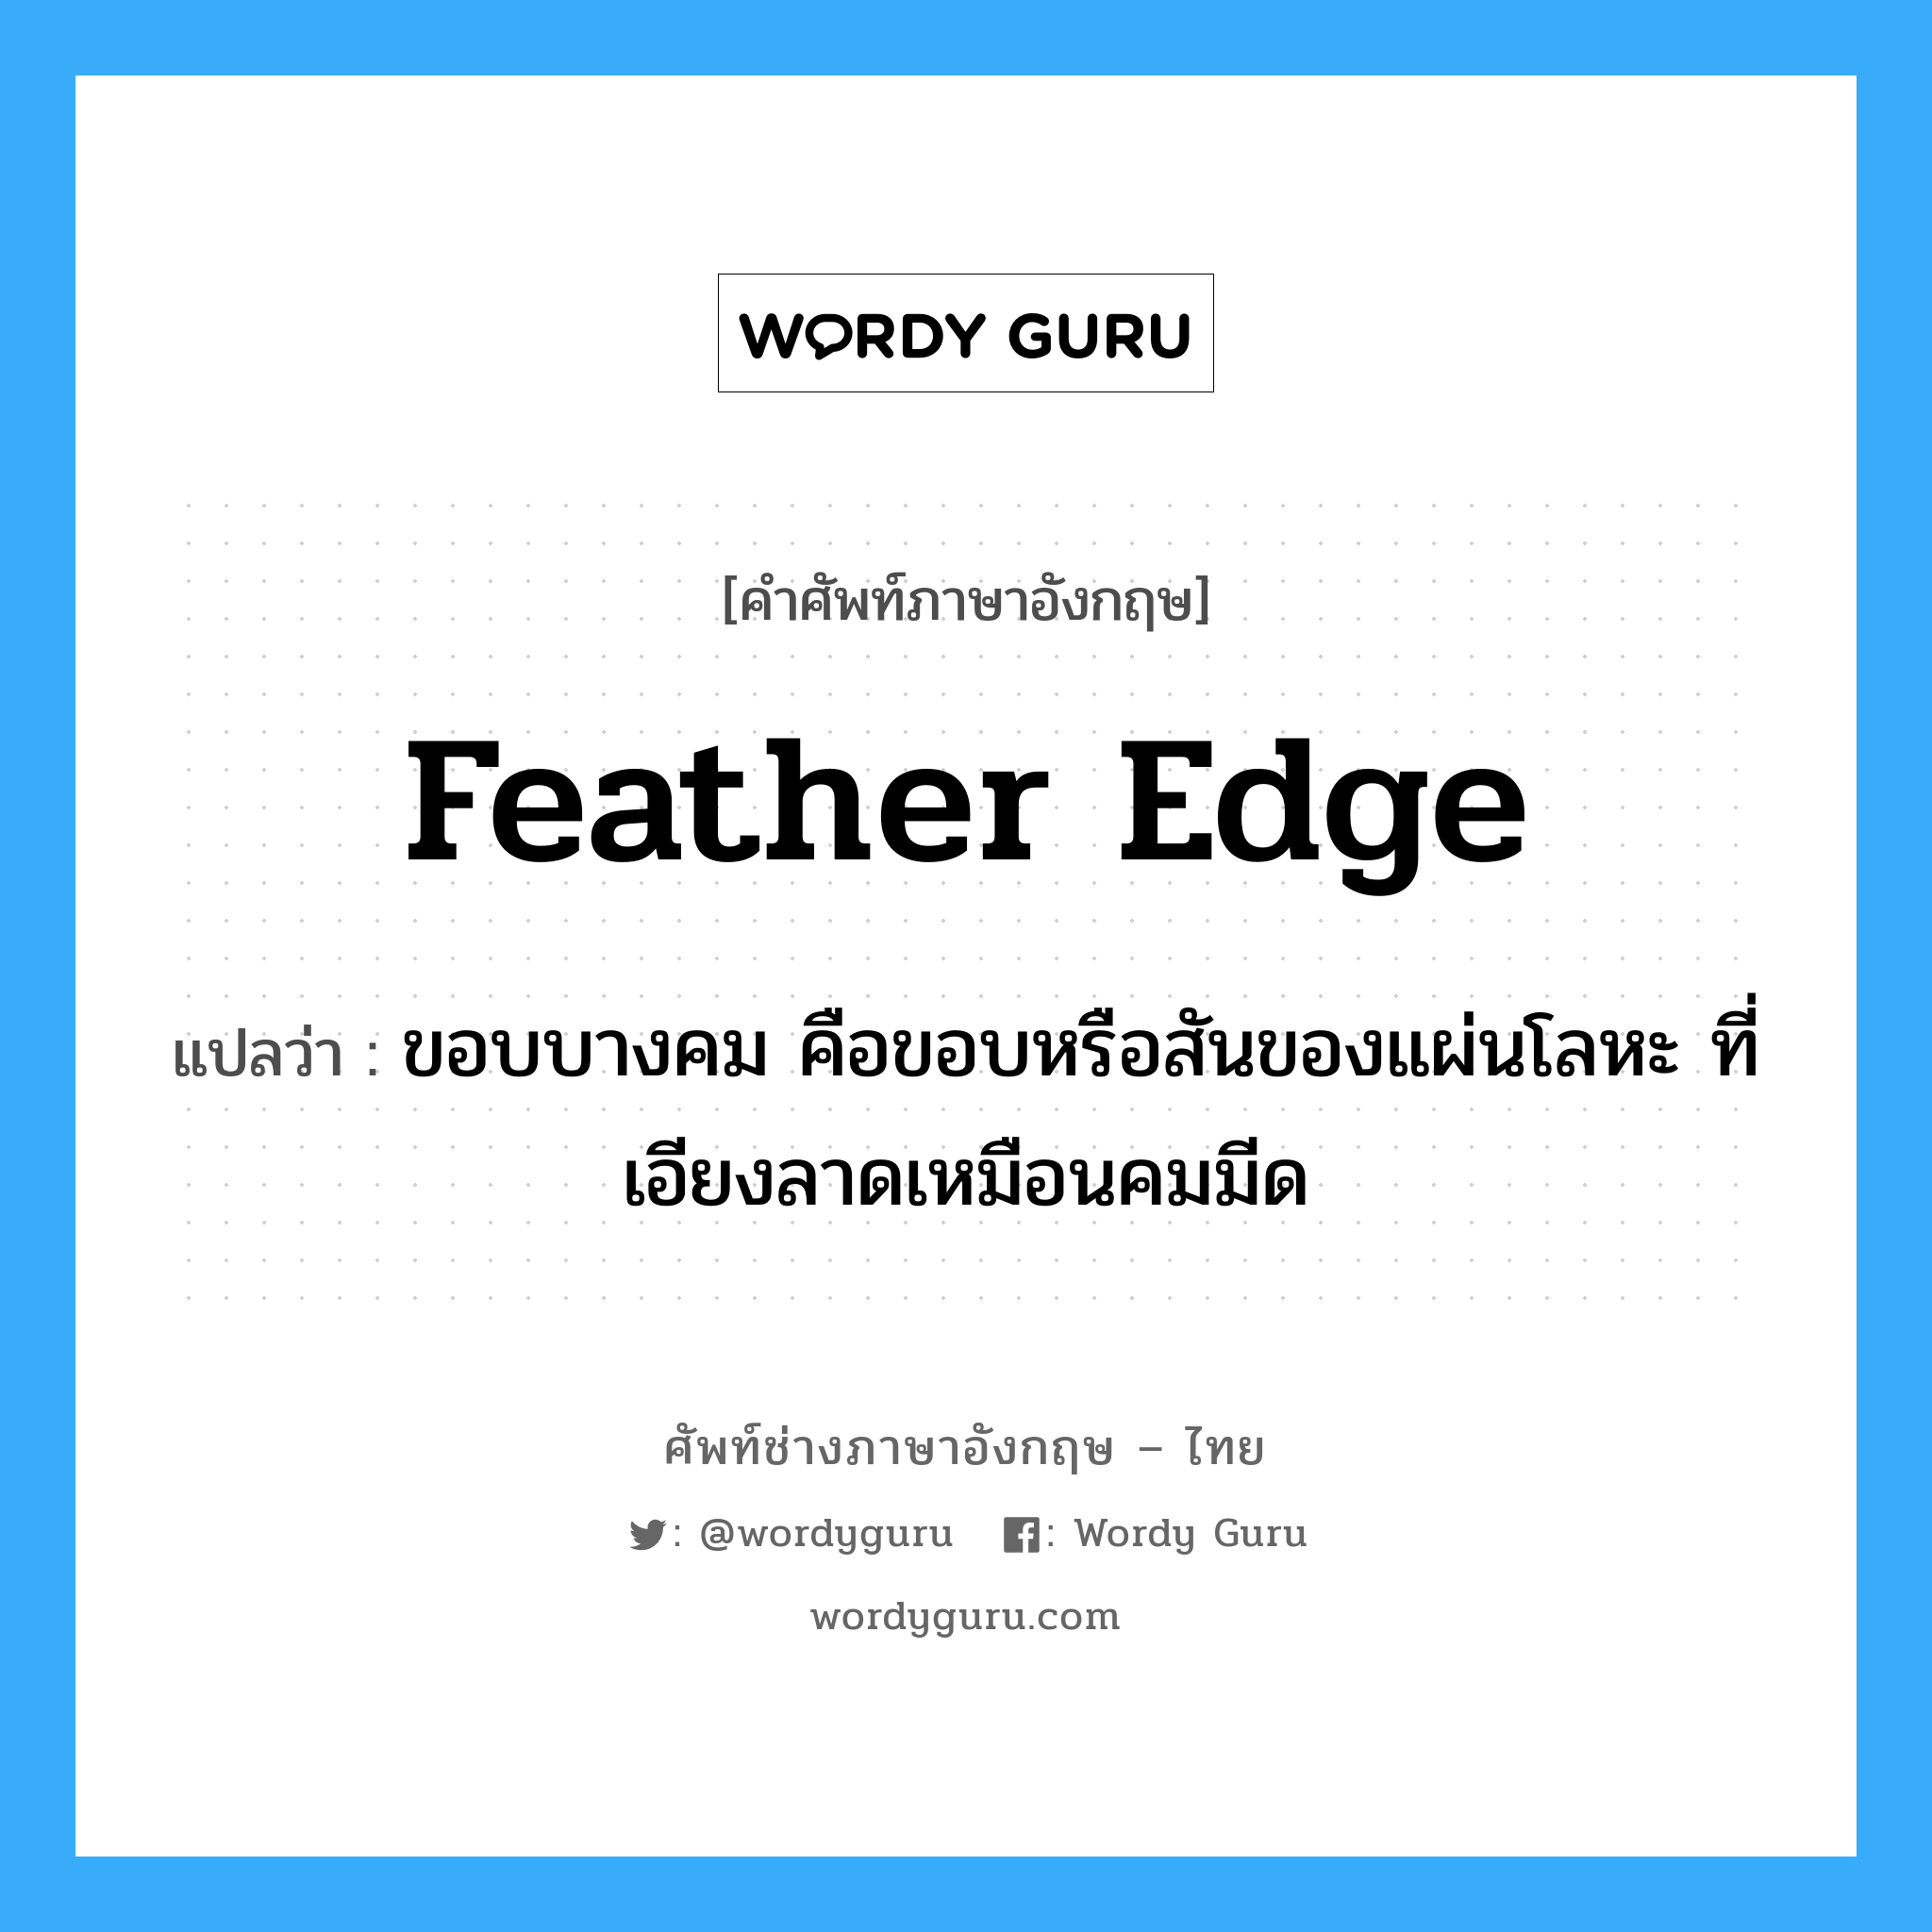 feather edge แปลว่า?, คำศัพท์ช่างภาษาอังกฤษ - ไทย feather edge คำศัพท์ภาษาอังกฤษ feather edge แปลว่า ขอบบางคม คือขอบหรือสันของแผ่นโลหะ ที่เอียงลาดเหมือนคมมีด